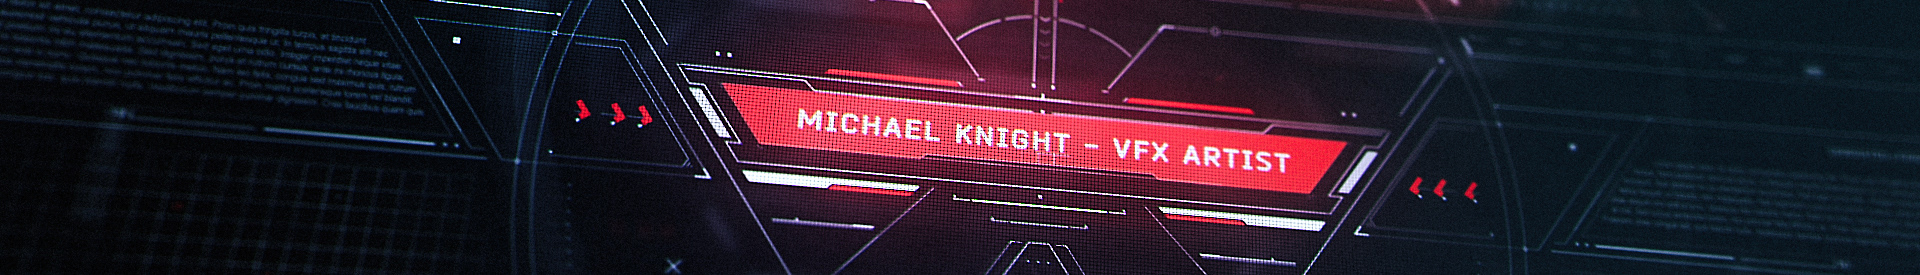 Michael Knight のプロファイルバナー